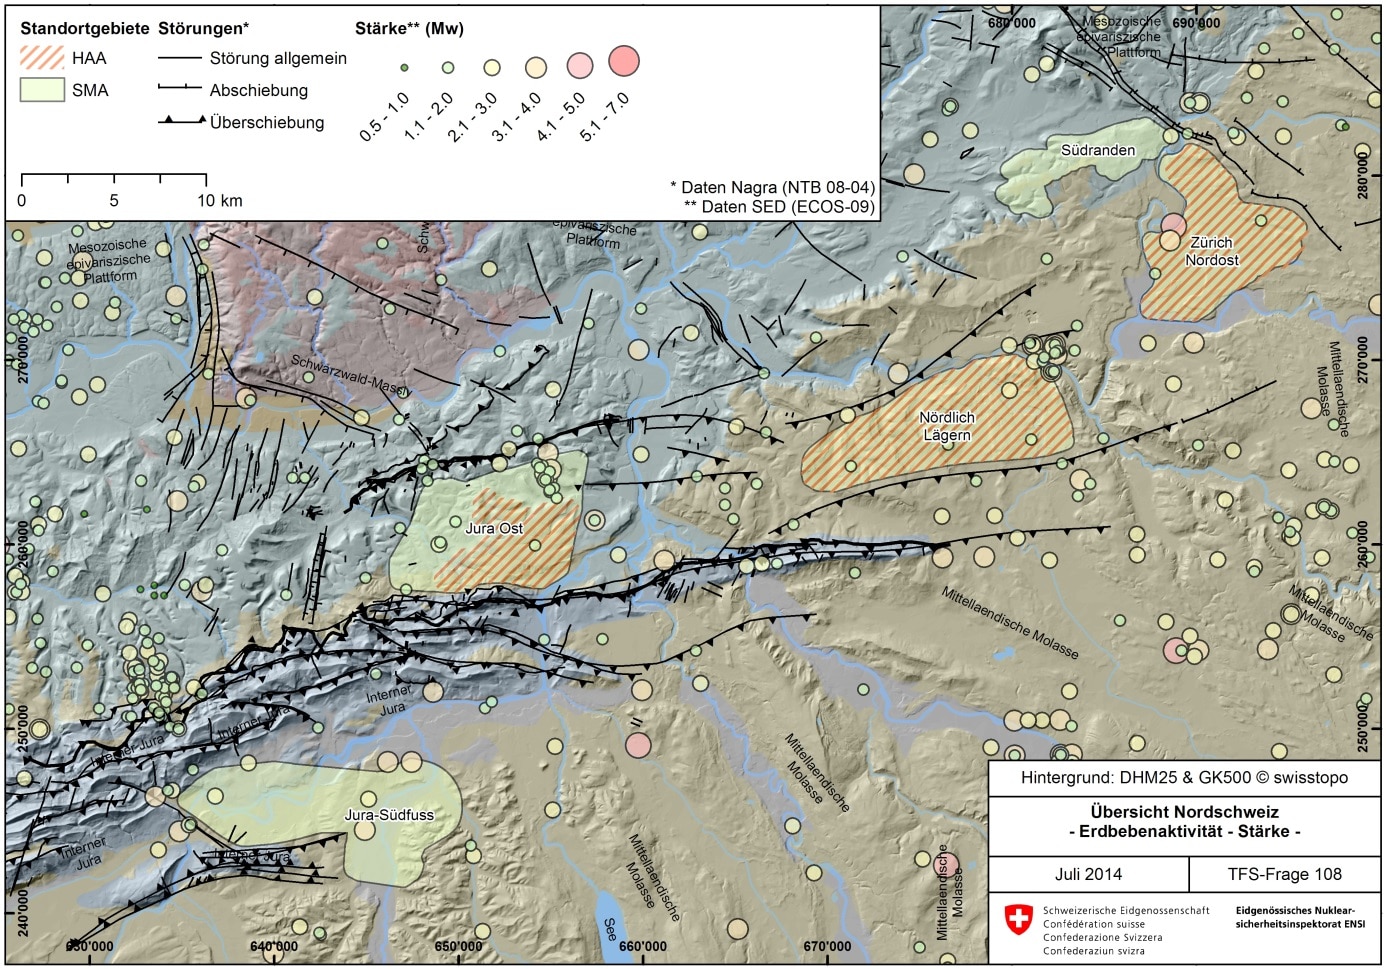 Figur 108-3: Erdbebenaktivität in der Nordschweiz im Zeitraum zwischen 250 n. Chr. und 2008. Dargestellt ist die Erdbebenstärke gemäss Erdbebenkatalog des Schweizer Erdbebendiensts (ECOS-09; SED 2011). Die Beben in den geologischen Standortgebieten der Nordschweiz zeigen maximale Magnituden von 4. Zu beachten gilt, dass die Lokalisierung und Magnitudenbestimmung der nicht instrumentell erfassten Beben (d. h. vor 1975) mit grösseren Unsicherheiten behaftet ist.